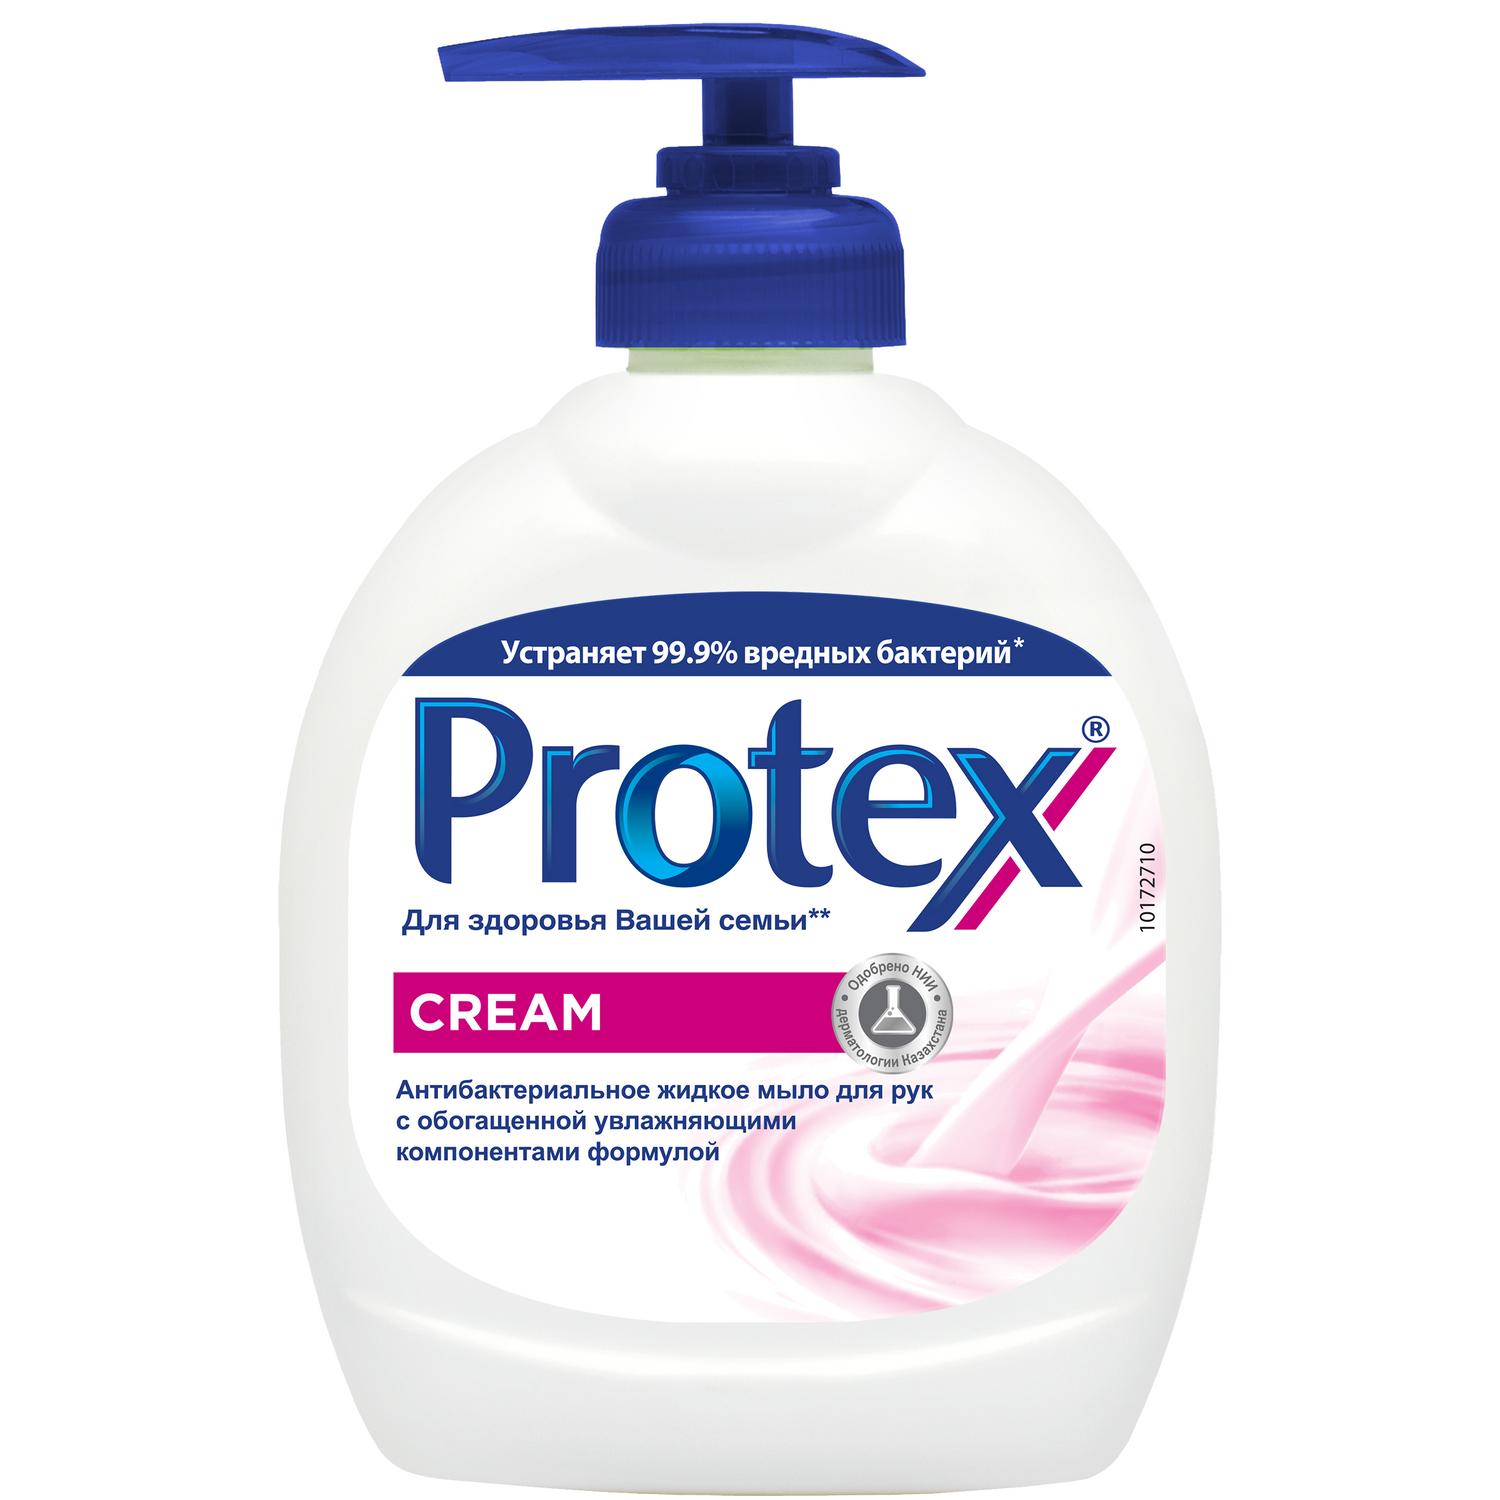 Protex Антибактериальное жидкое мыло для рук Cream, 300 мл жидкое мыло protex fresh антибактериальное 300 мл